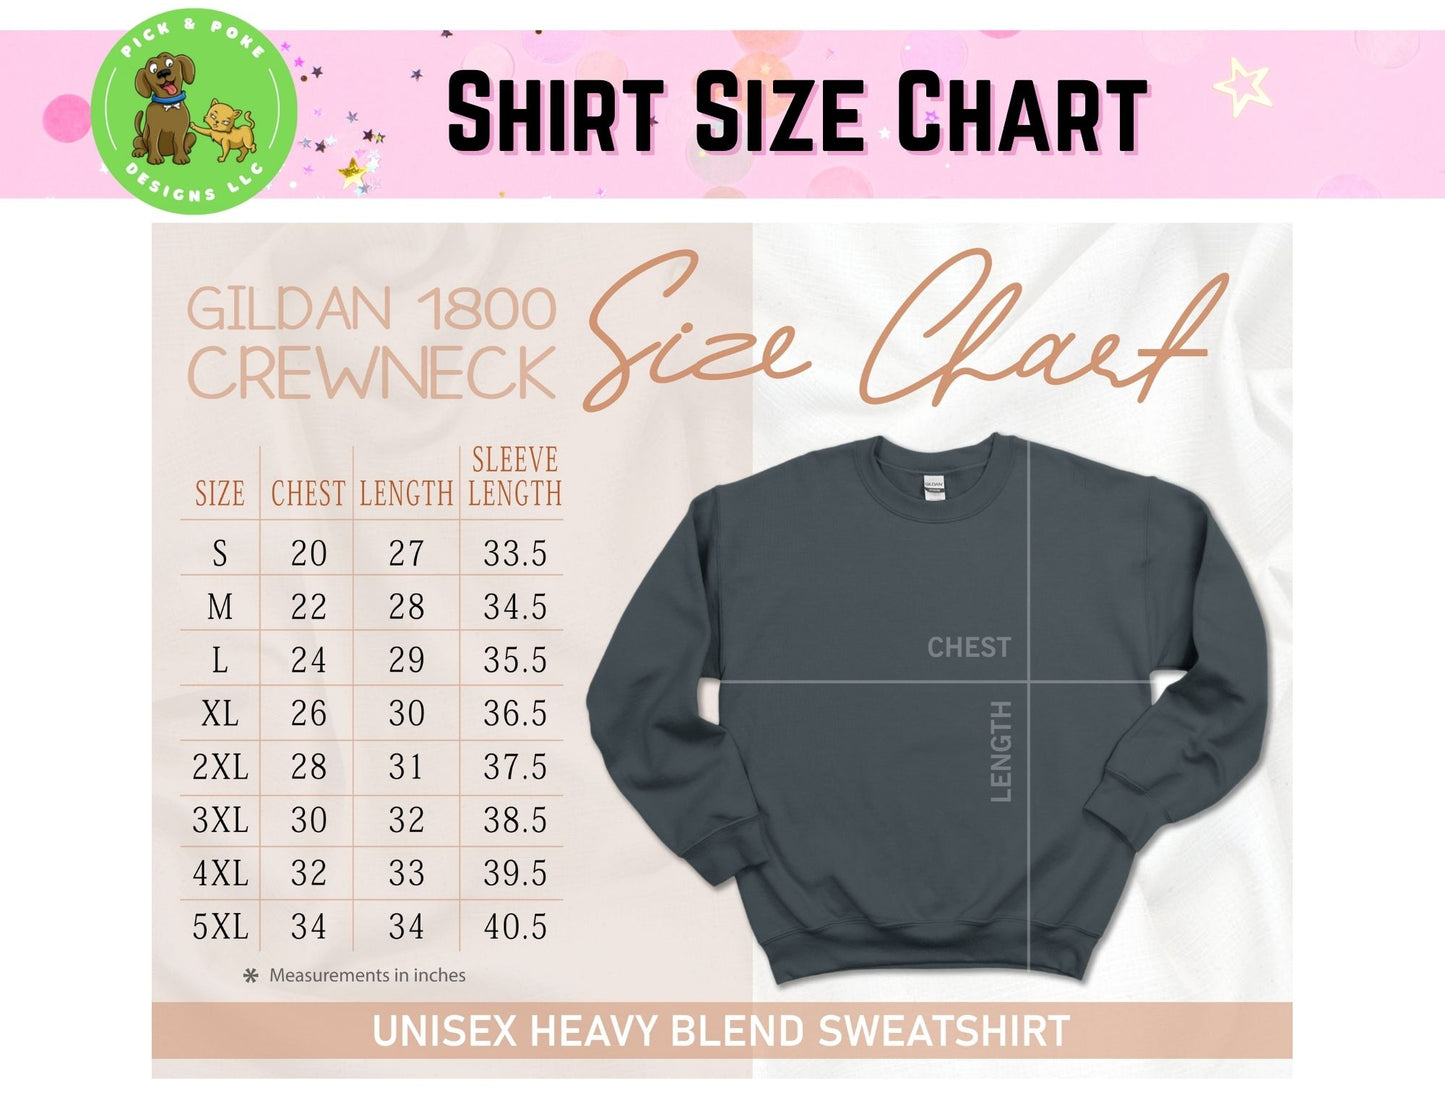 Size chart for Gildan 18000 style crewneck sweatshirts